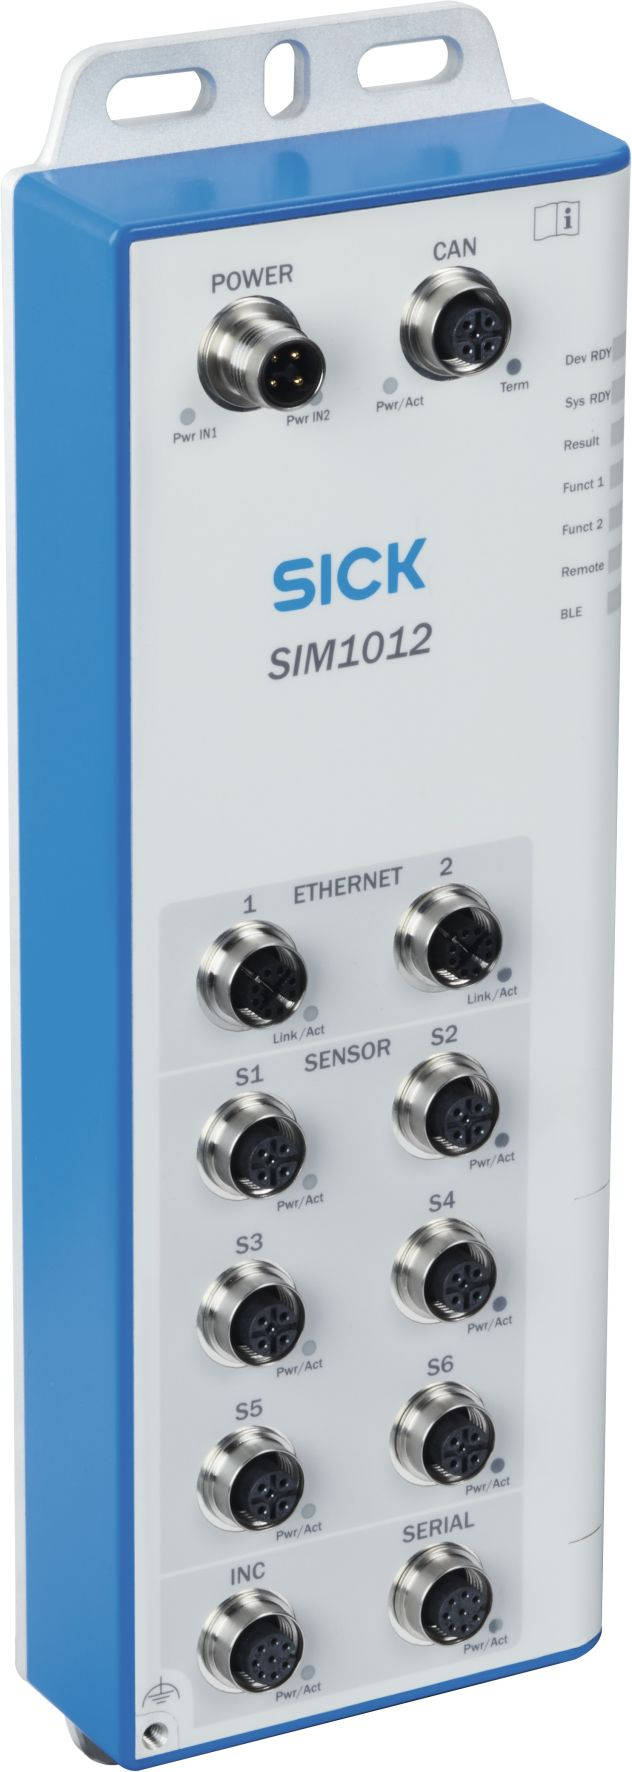 Die neuen Sensor Integration Machines SIM1004 und SIM1012 verbinden jetzt intelligente Sensoren zu leistungsstarken Multi-Sensor-Systemen.